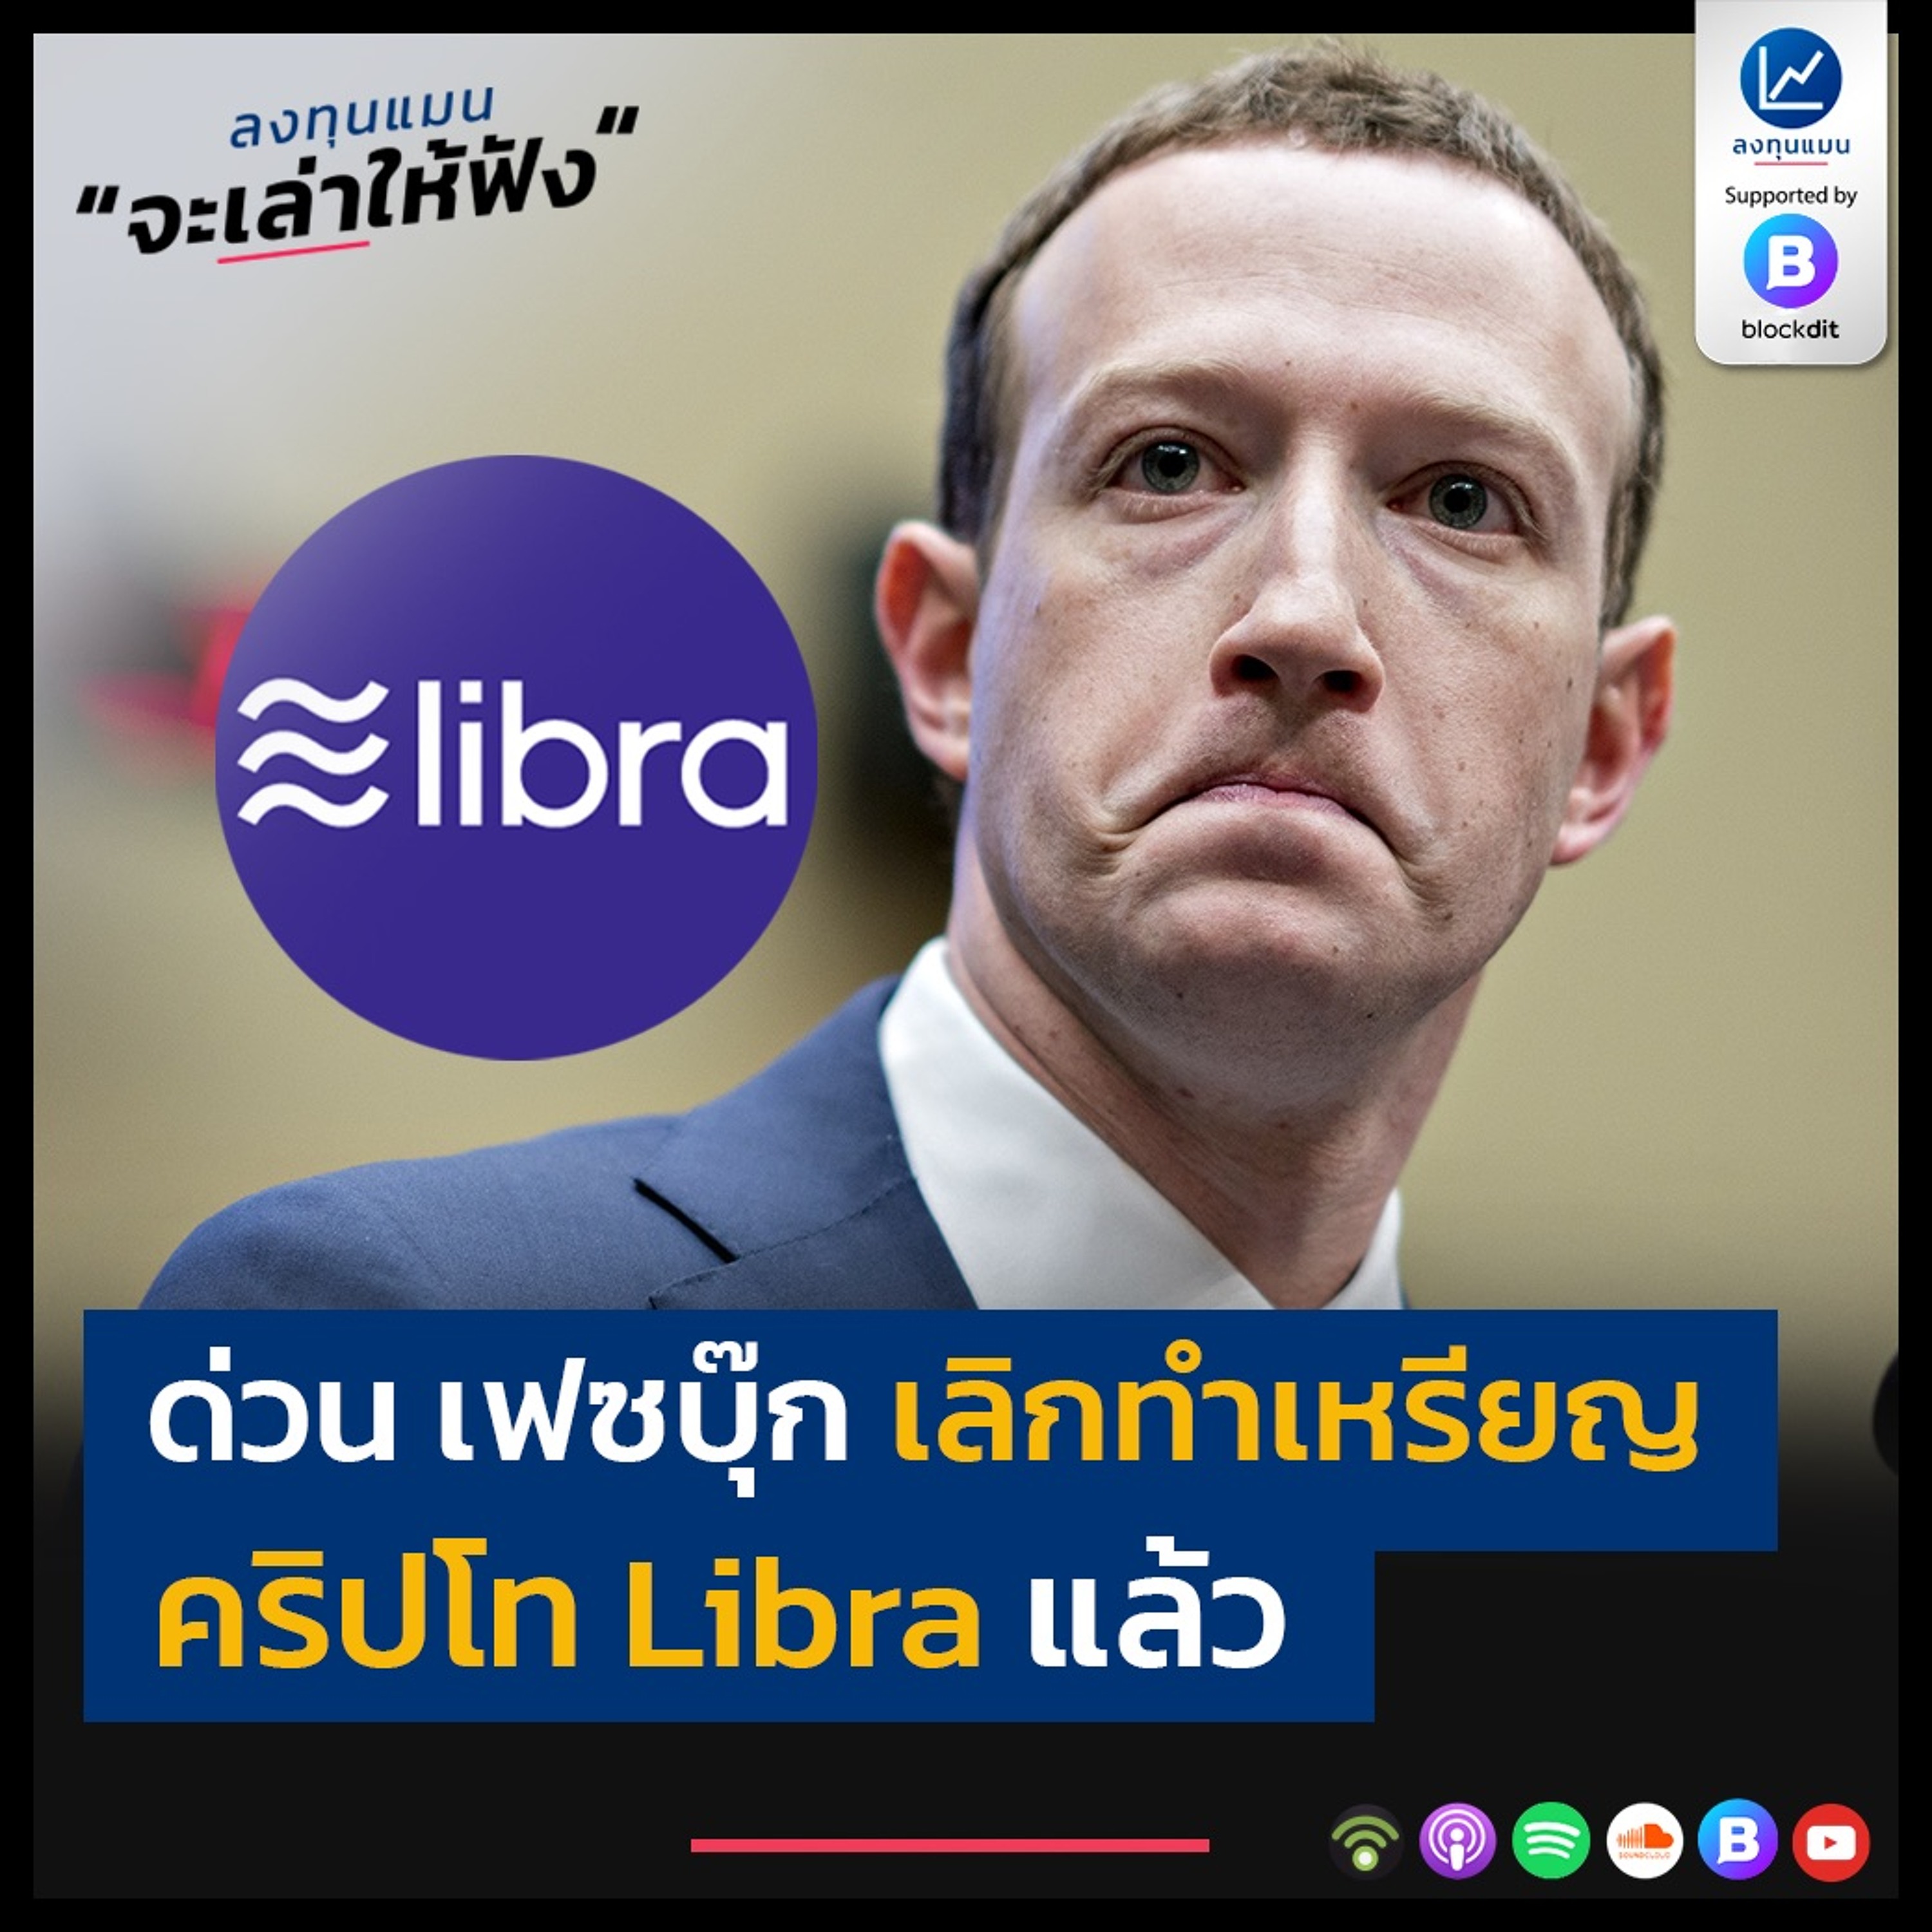 ด่วน เฟซบุ๊ก เลิกทำเหรียญ คริปโท Libra แล้ว